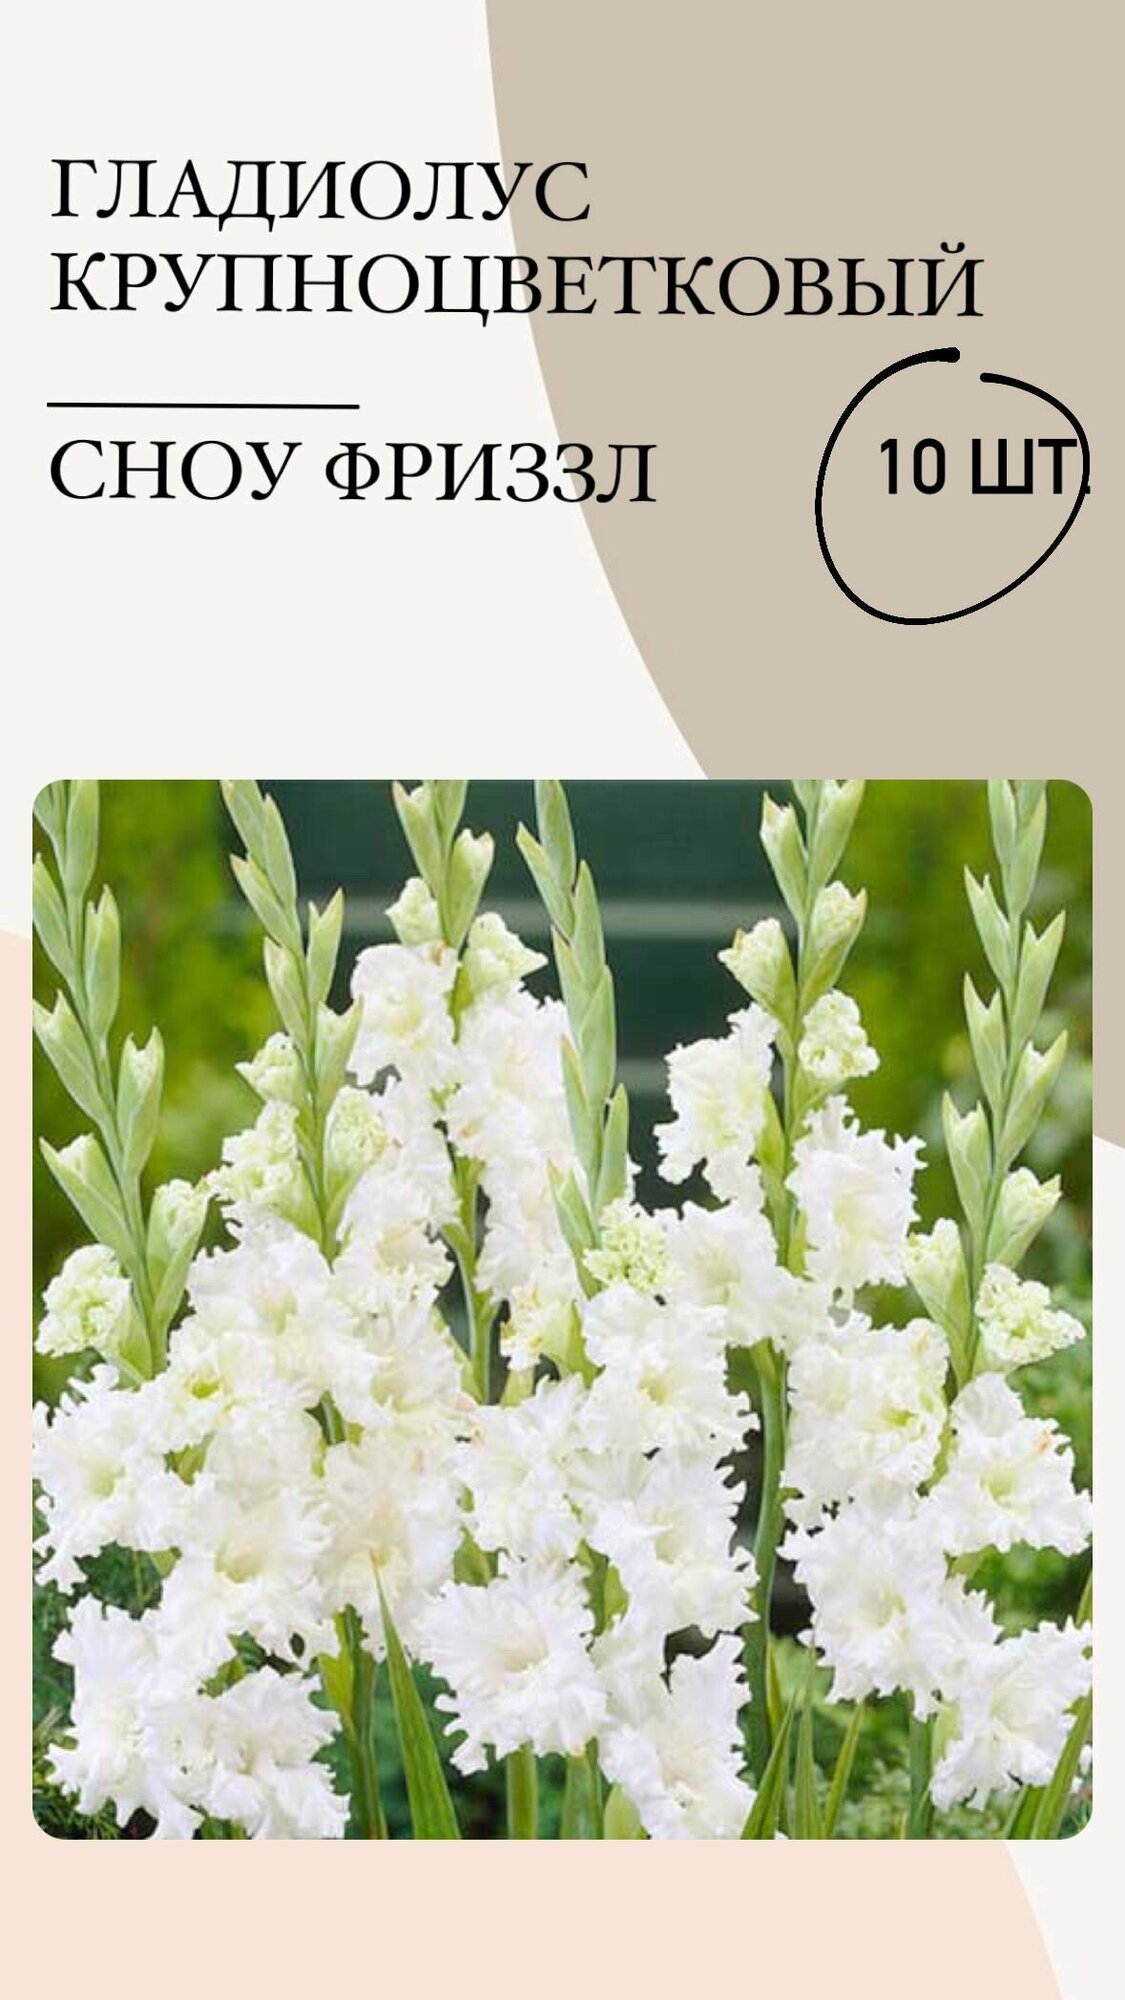 Гладиолус крупноцветковый Сноу Фриззл, луковицы многолетних цветов